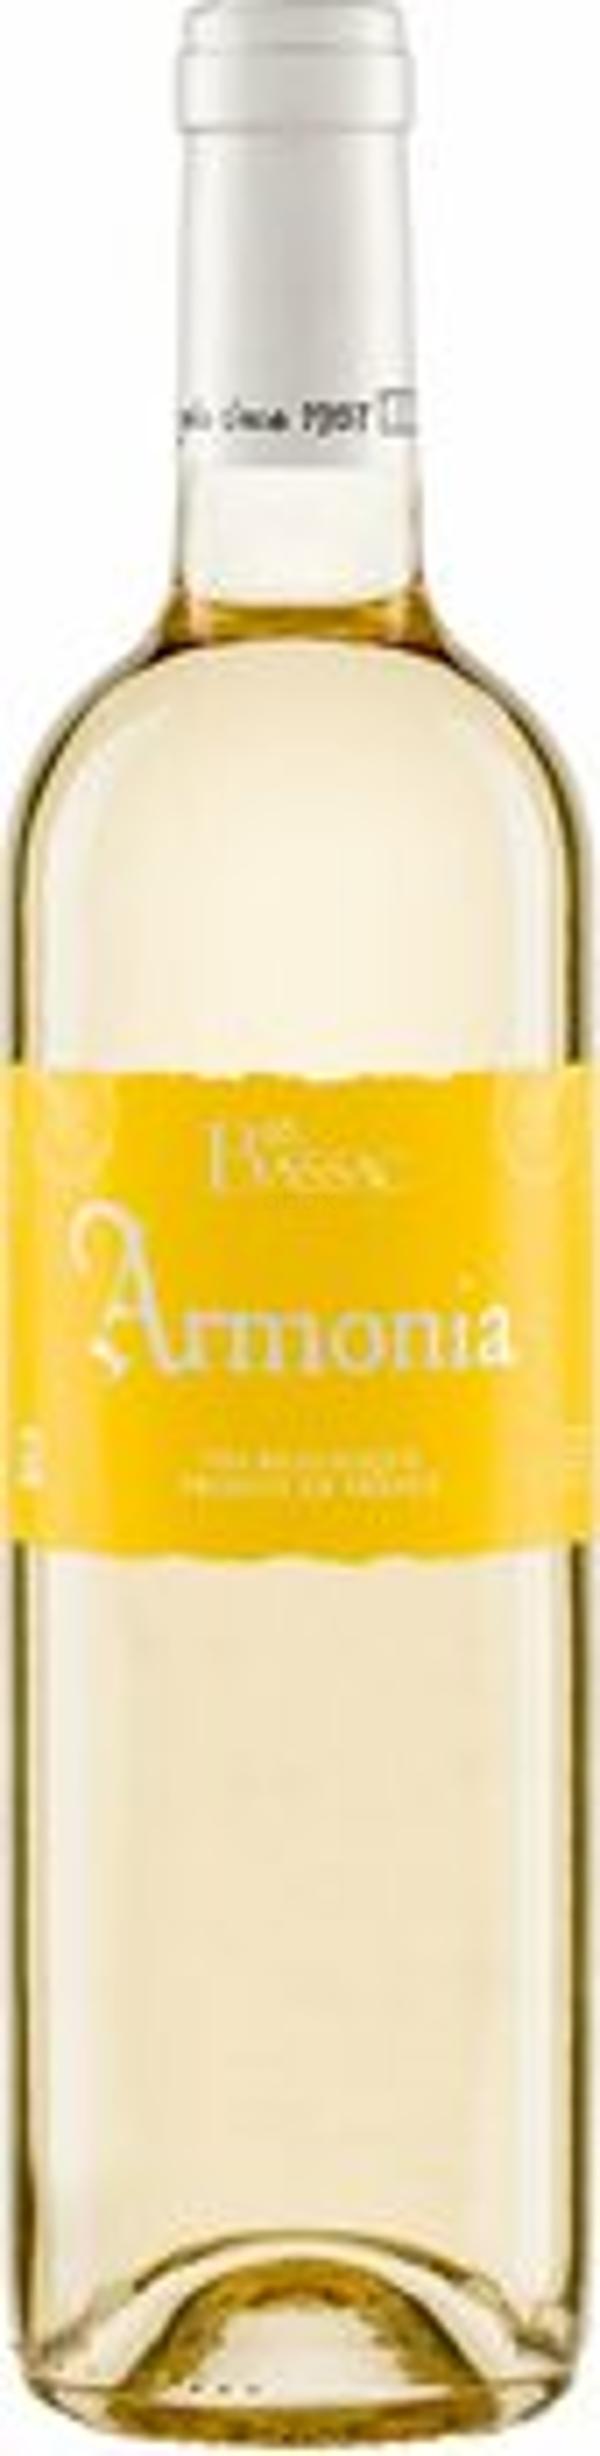 Produktfoto zu Armonia Blanc Bassac, Weißwein trocken 0,75l